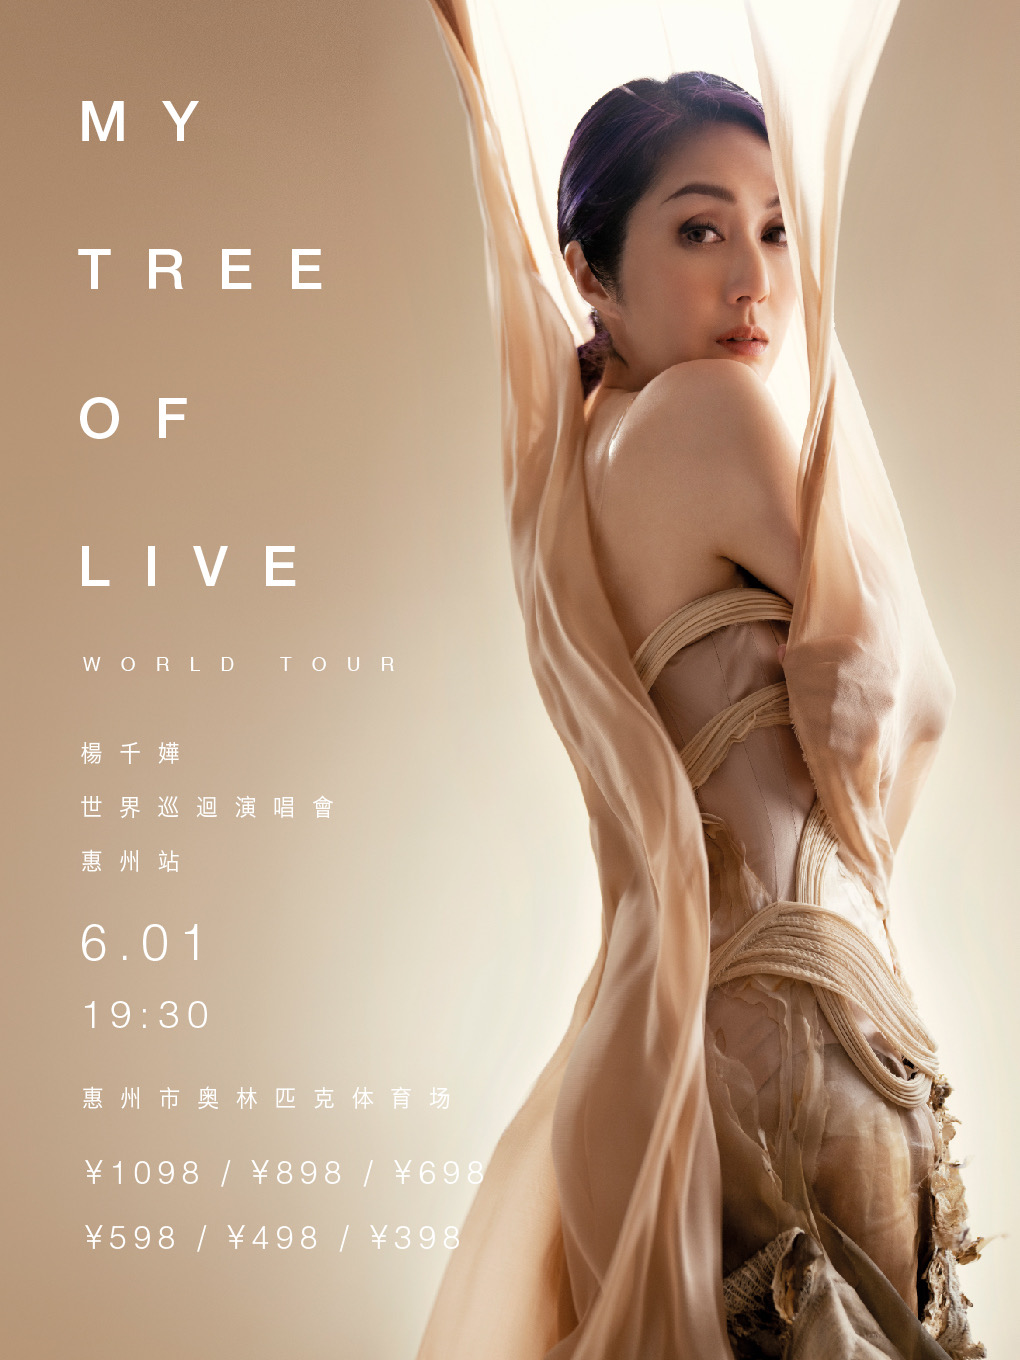 [惠州]杨千嬅MY TREE OF LIVE世界巡回演唱会-惠州站